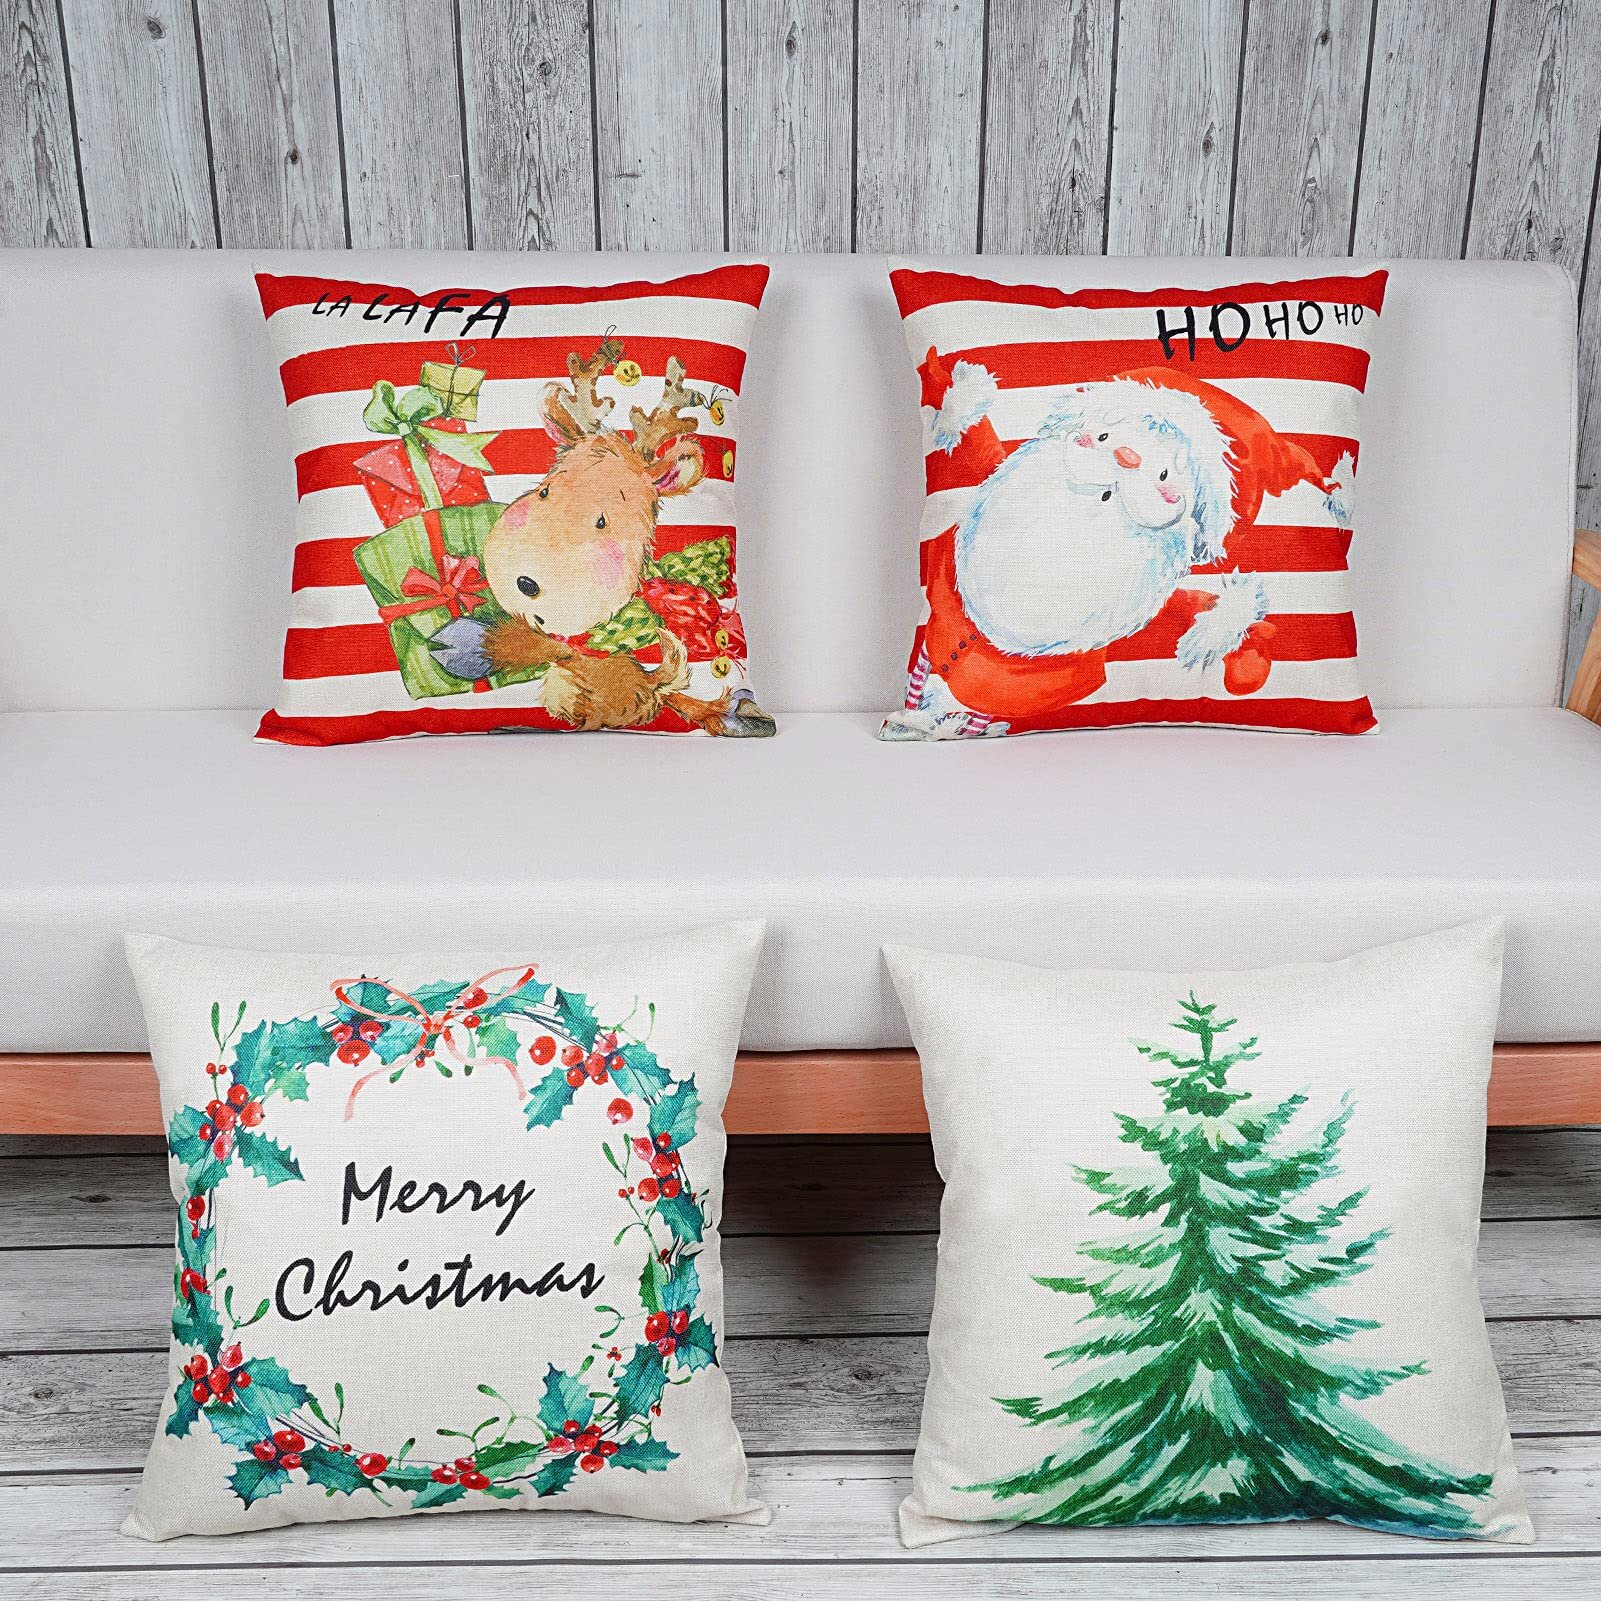 Family Decor Christmas Santa Home Decor Pillow Cases Cushion Cover Cotton Linen for Home Sofa Bedding